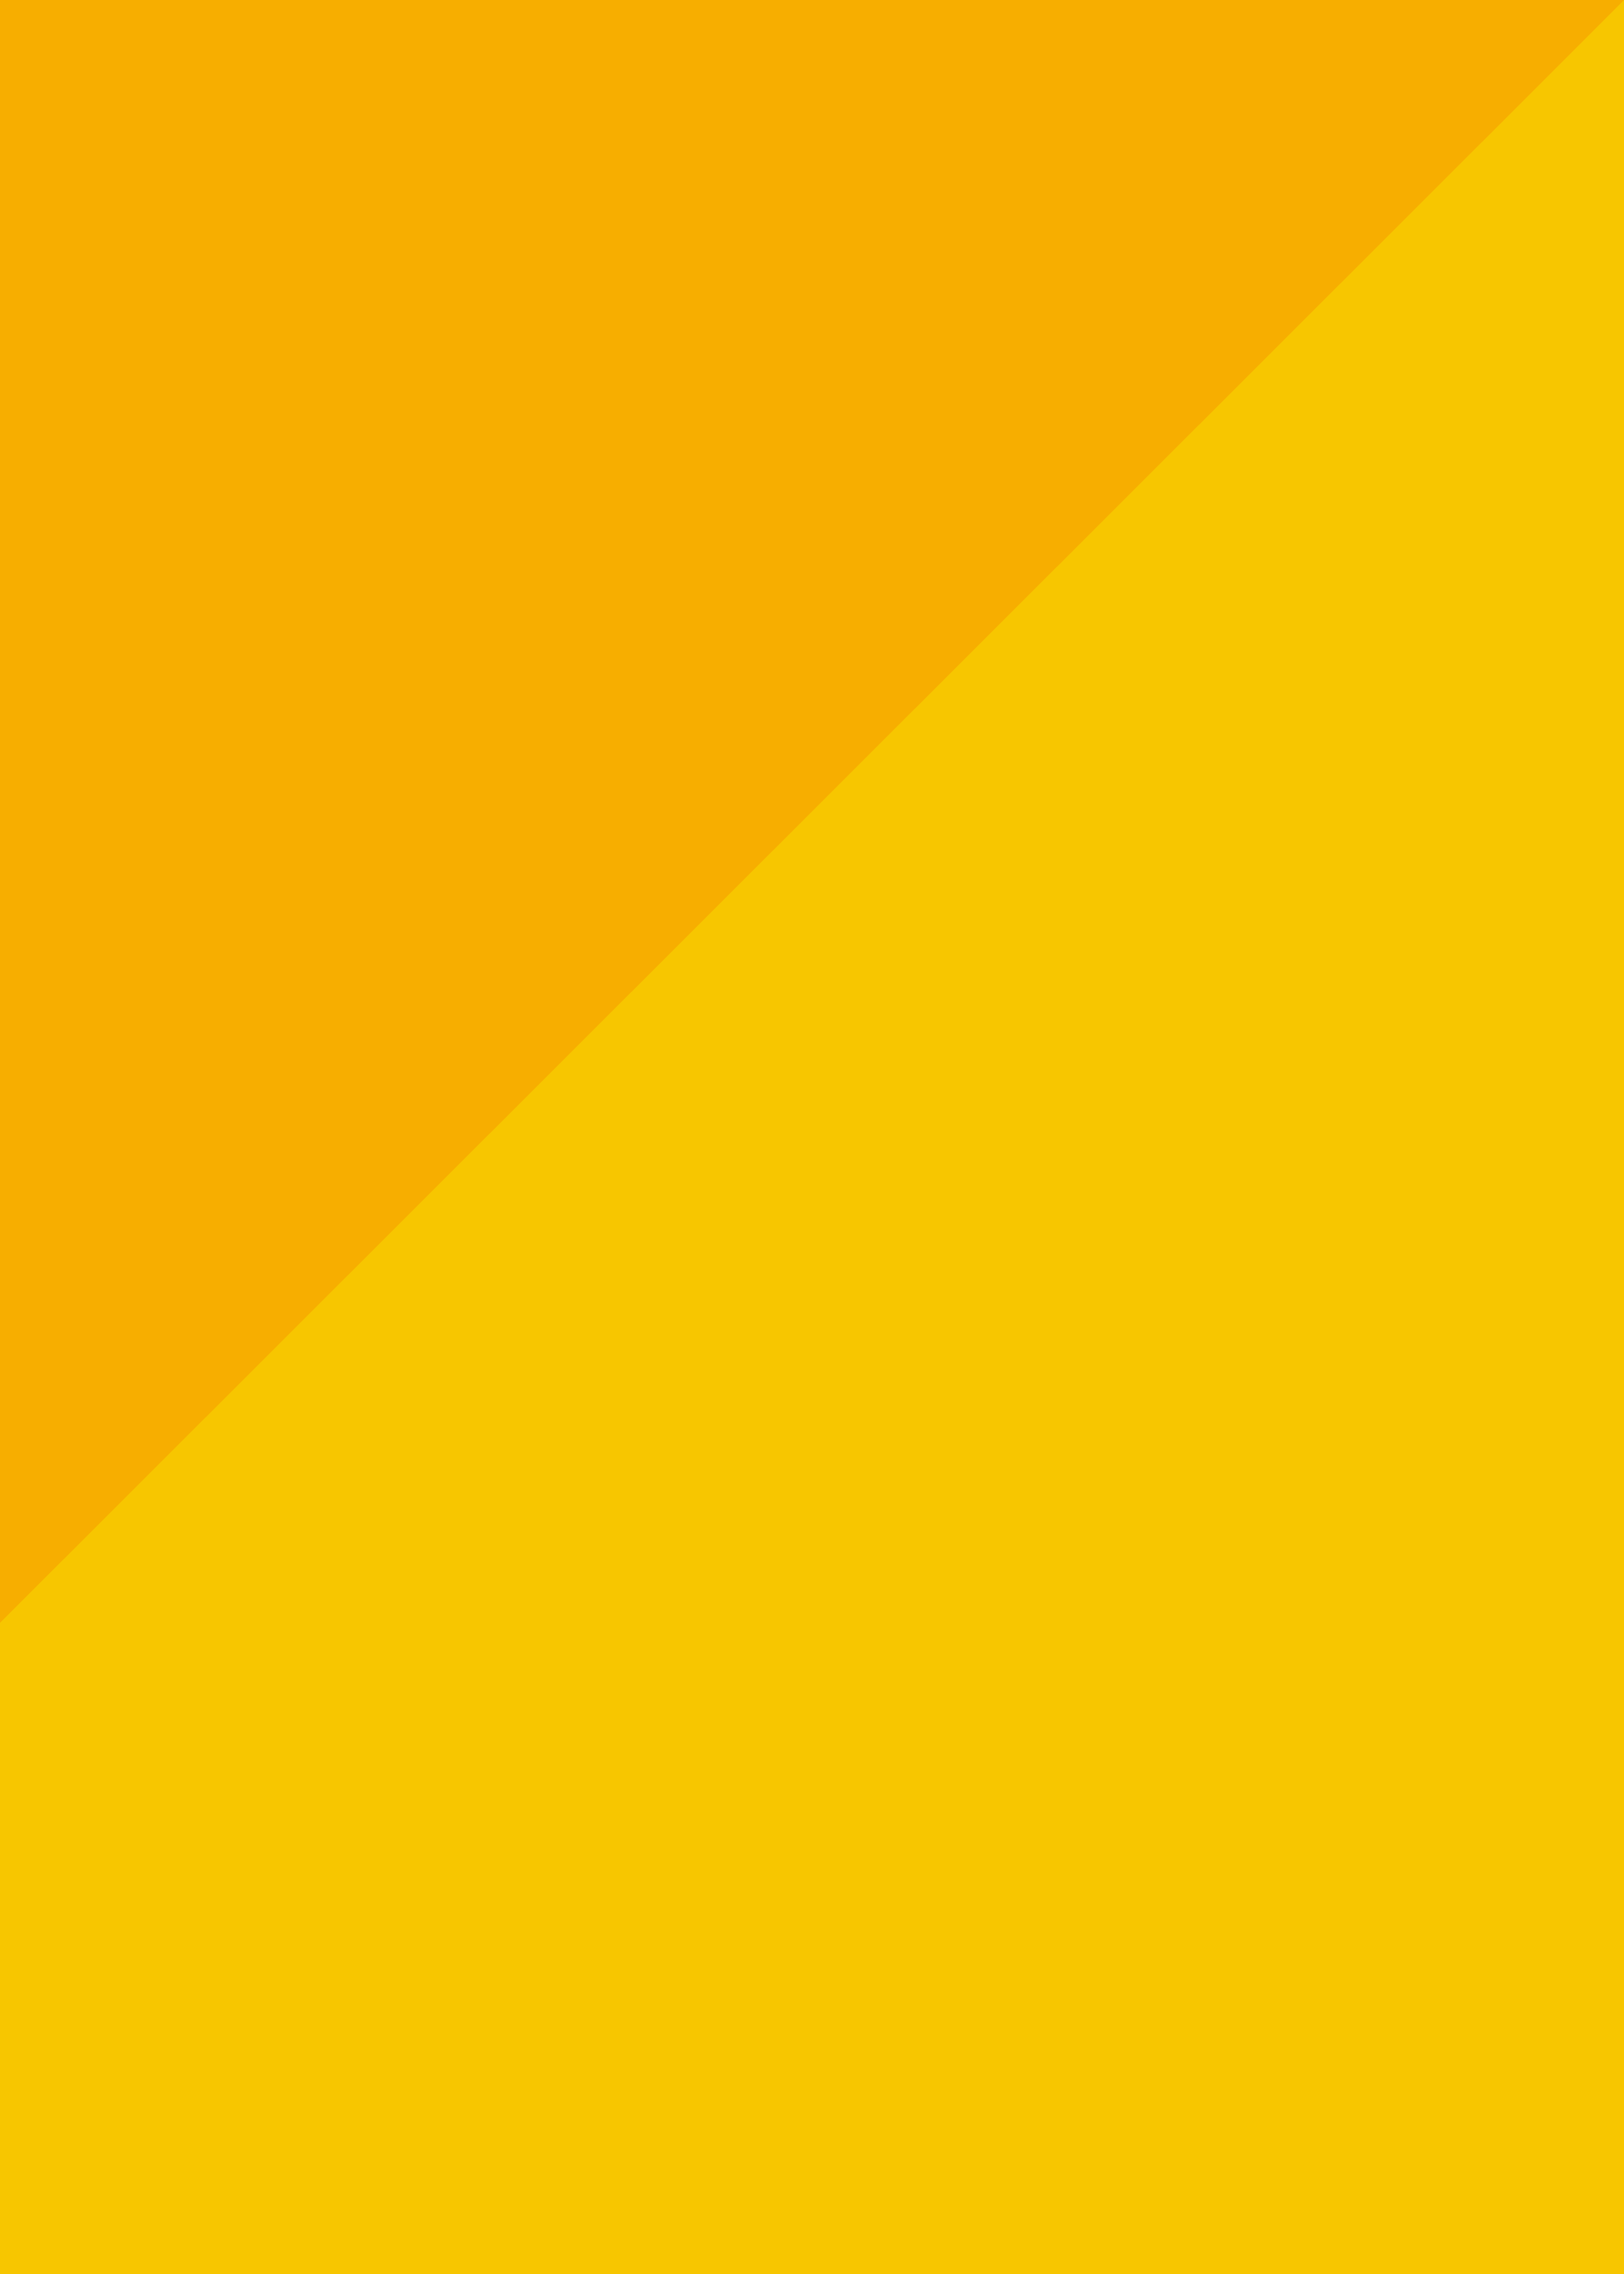 纯色de夏天 纯黄色 清新 简洁 锁屏 键盘 壁… - 堆糖，美图壁纸兴趣社区